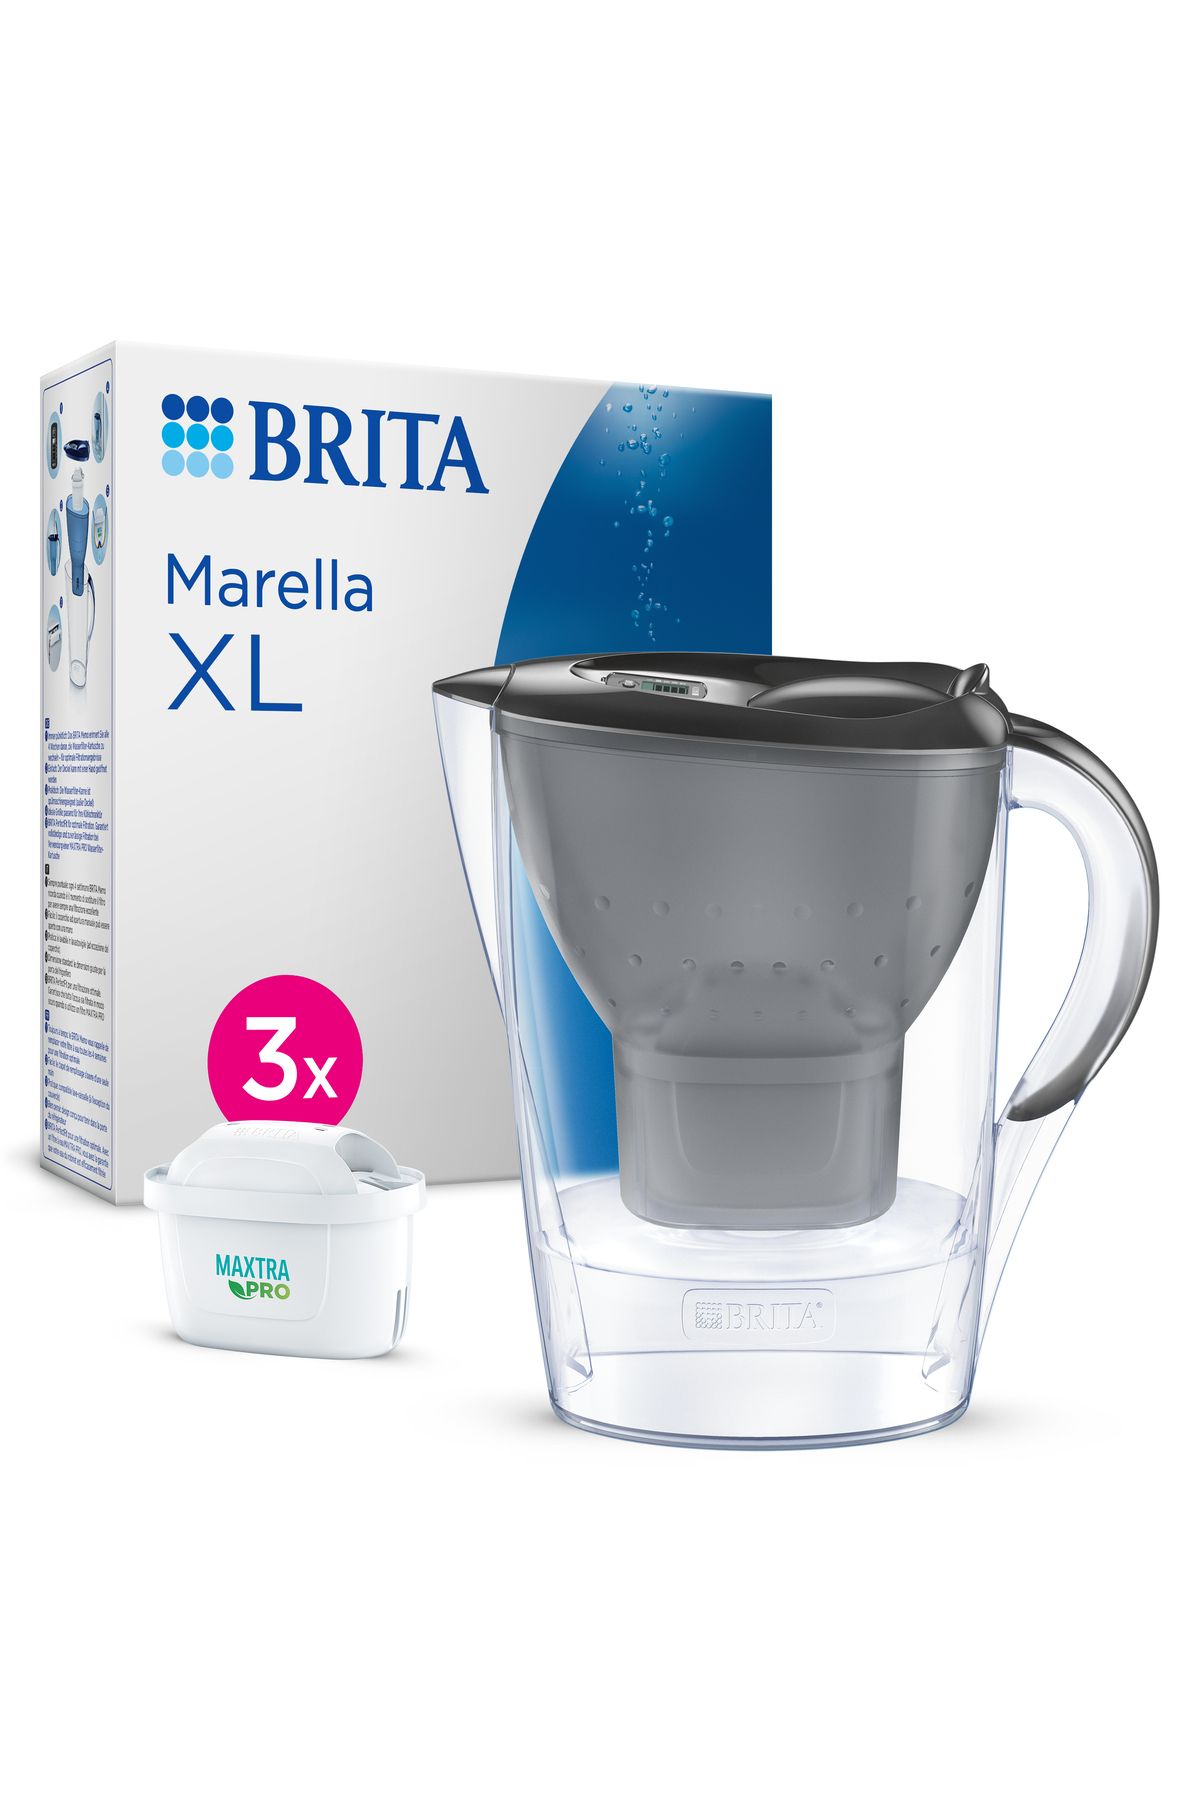 Brita Marella XL 3x MAXTRA PRO ALL-IN-1 Filtreli Su Arıtma Sürahisi – Grafit (3,5 L)